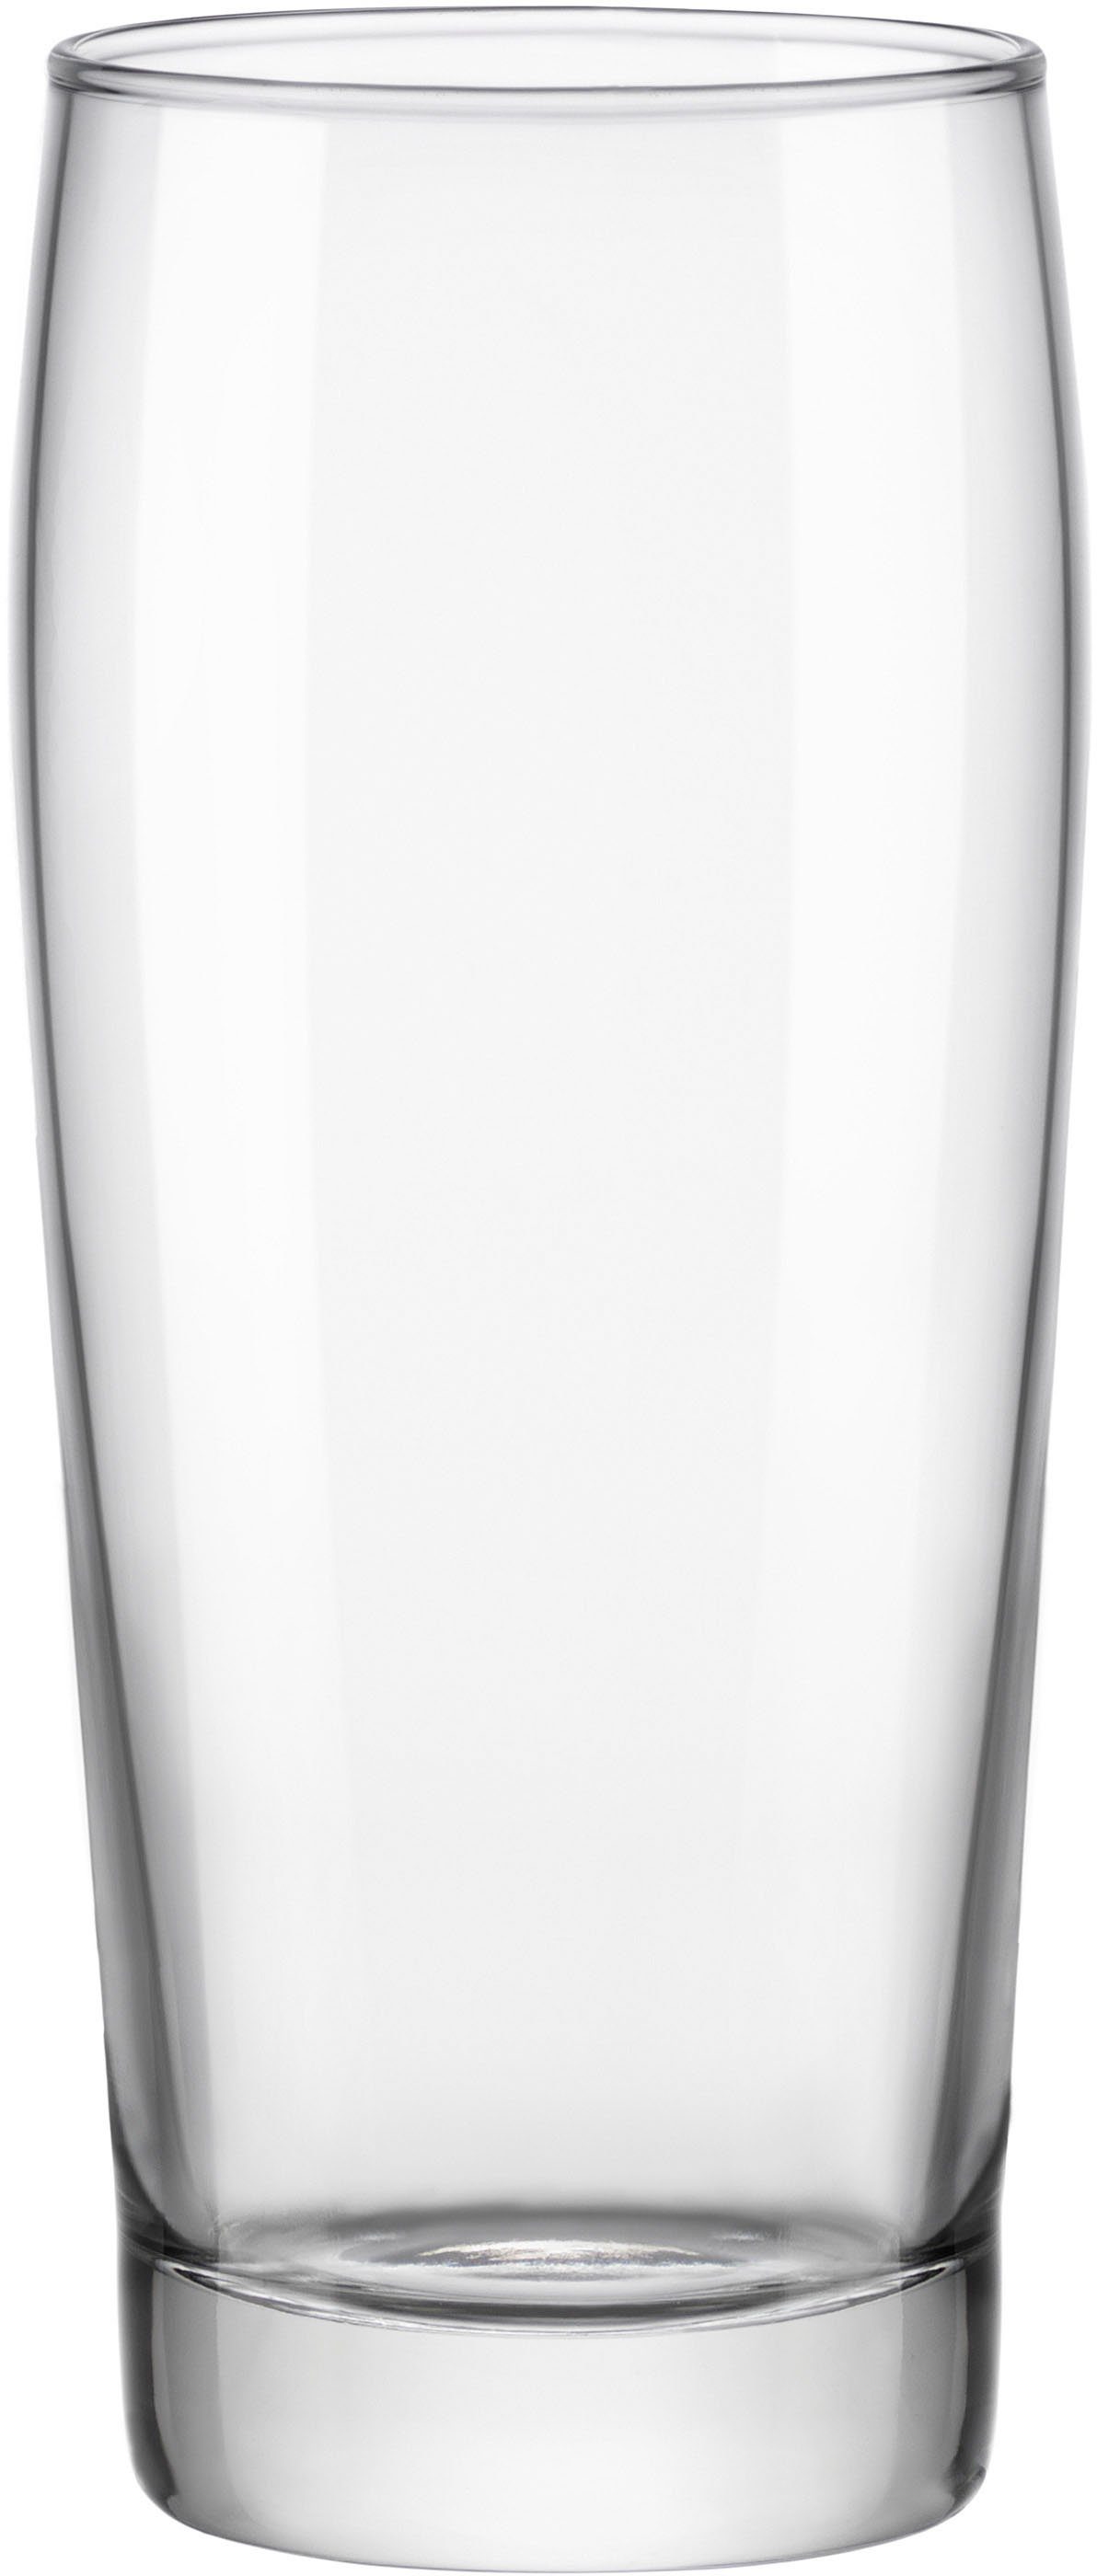 van Well Bierglas Willybecher, Glas, 0,4 L, geeicht, spülmaschinenfest, Gastronomiequalität, 12-tlg.